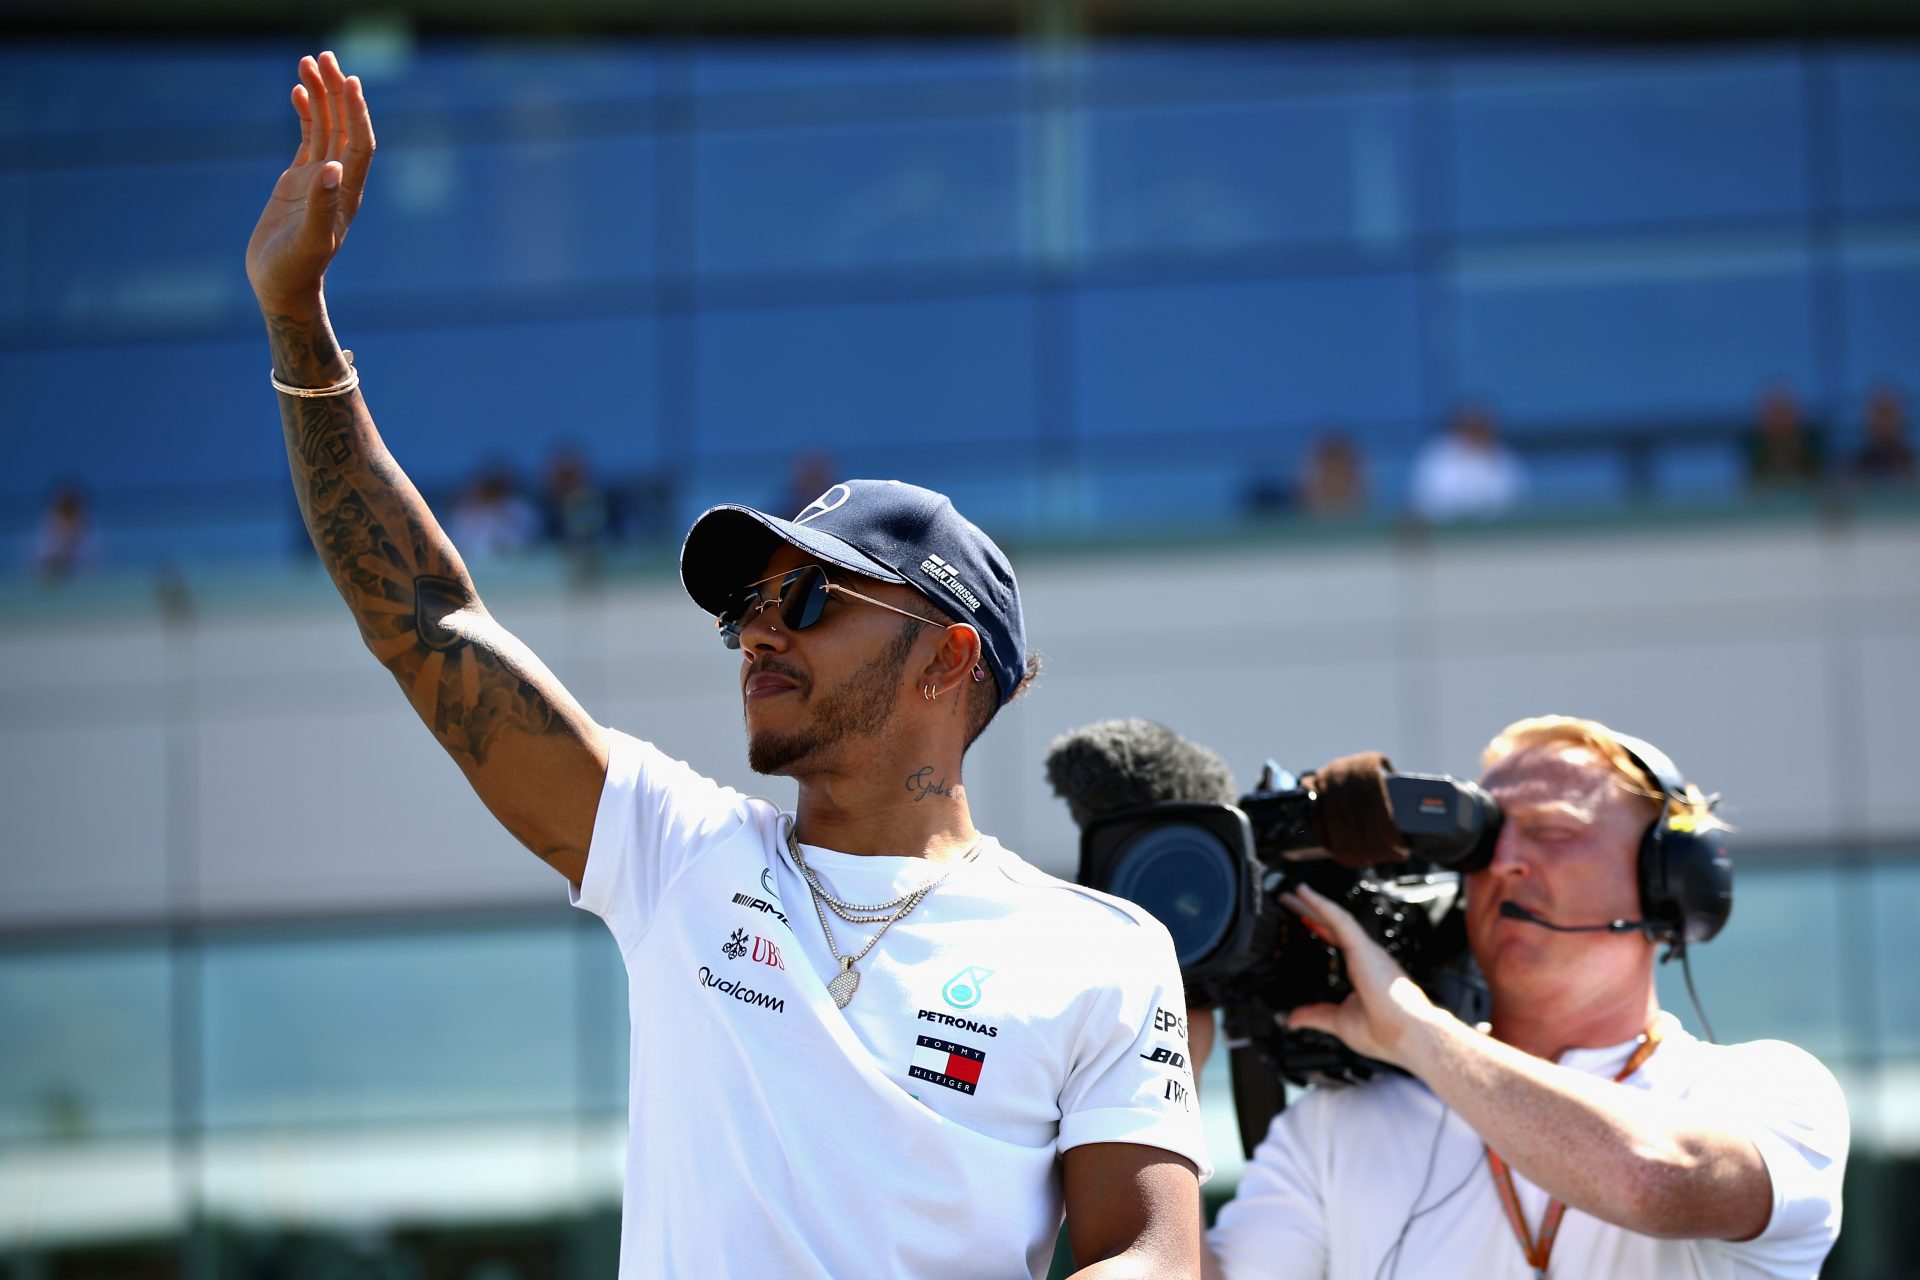 Lewis Hamilton (Mercedes) : $ 55 miljoen